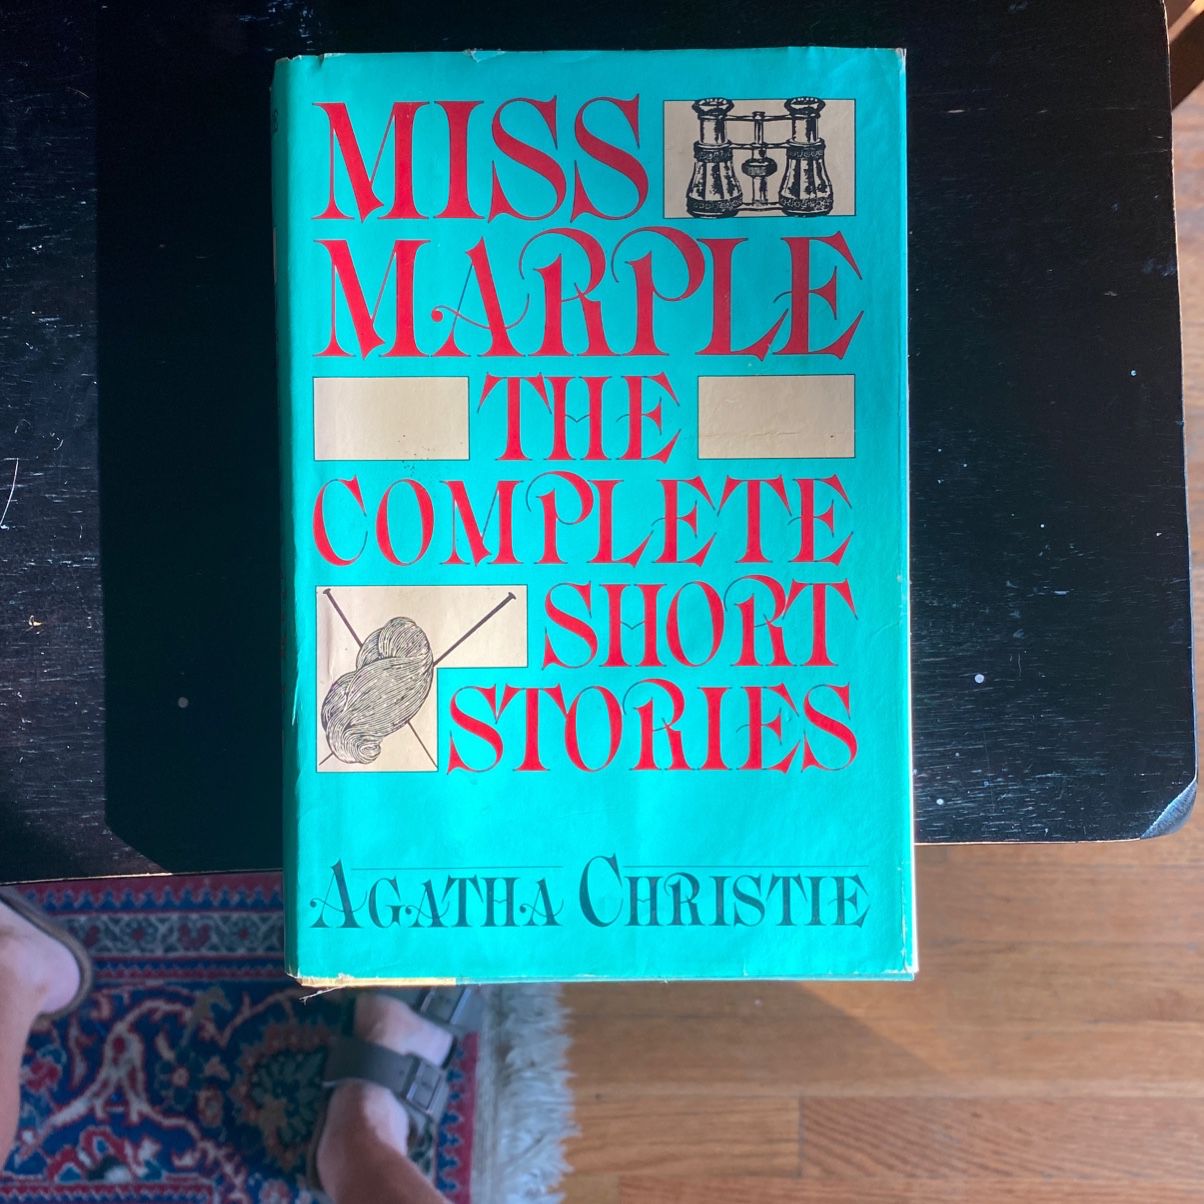 Agatha Christie Short Stories